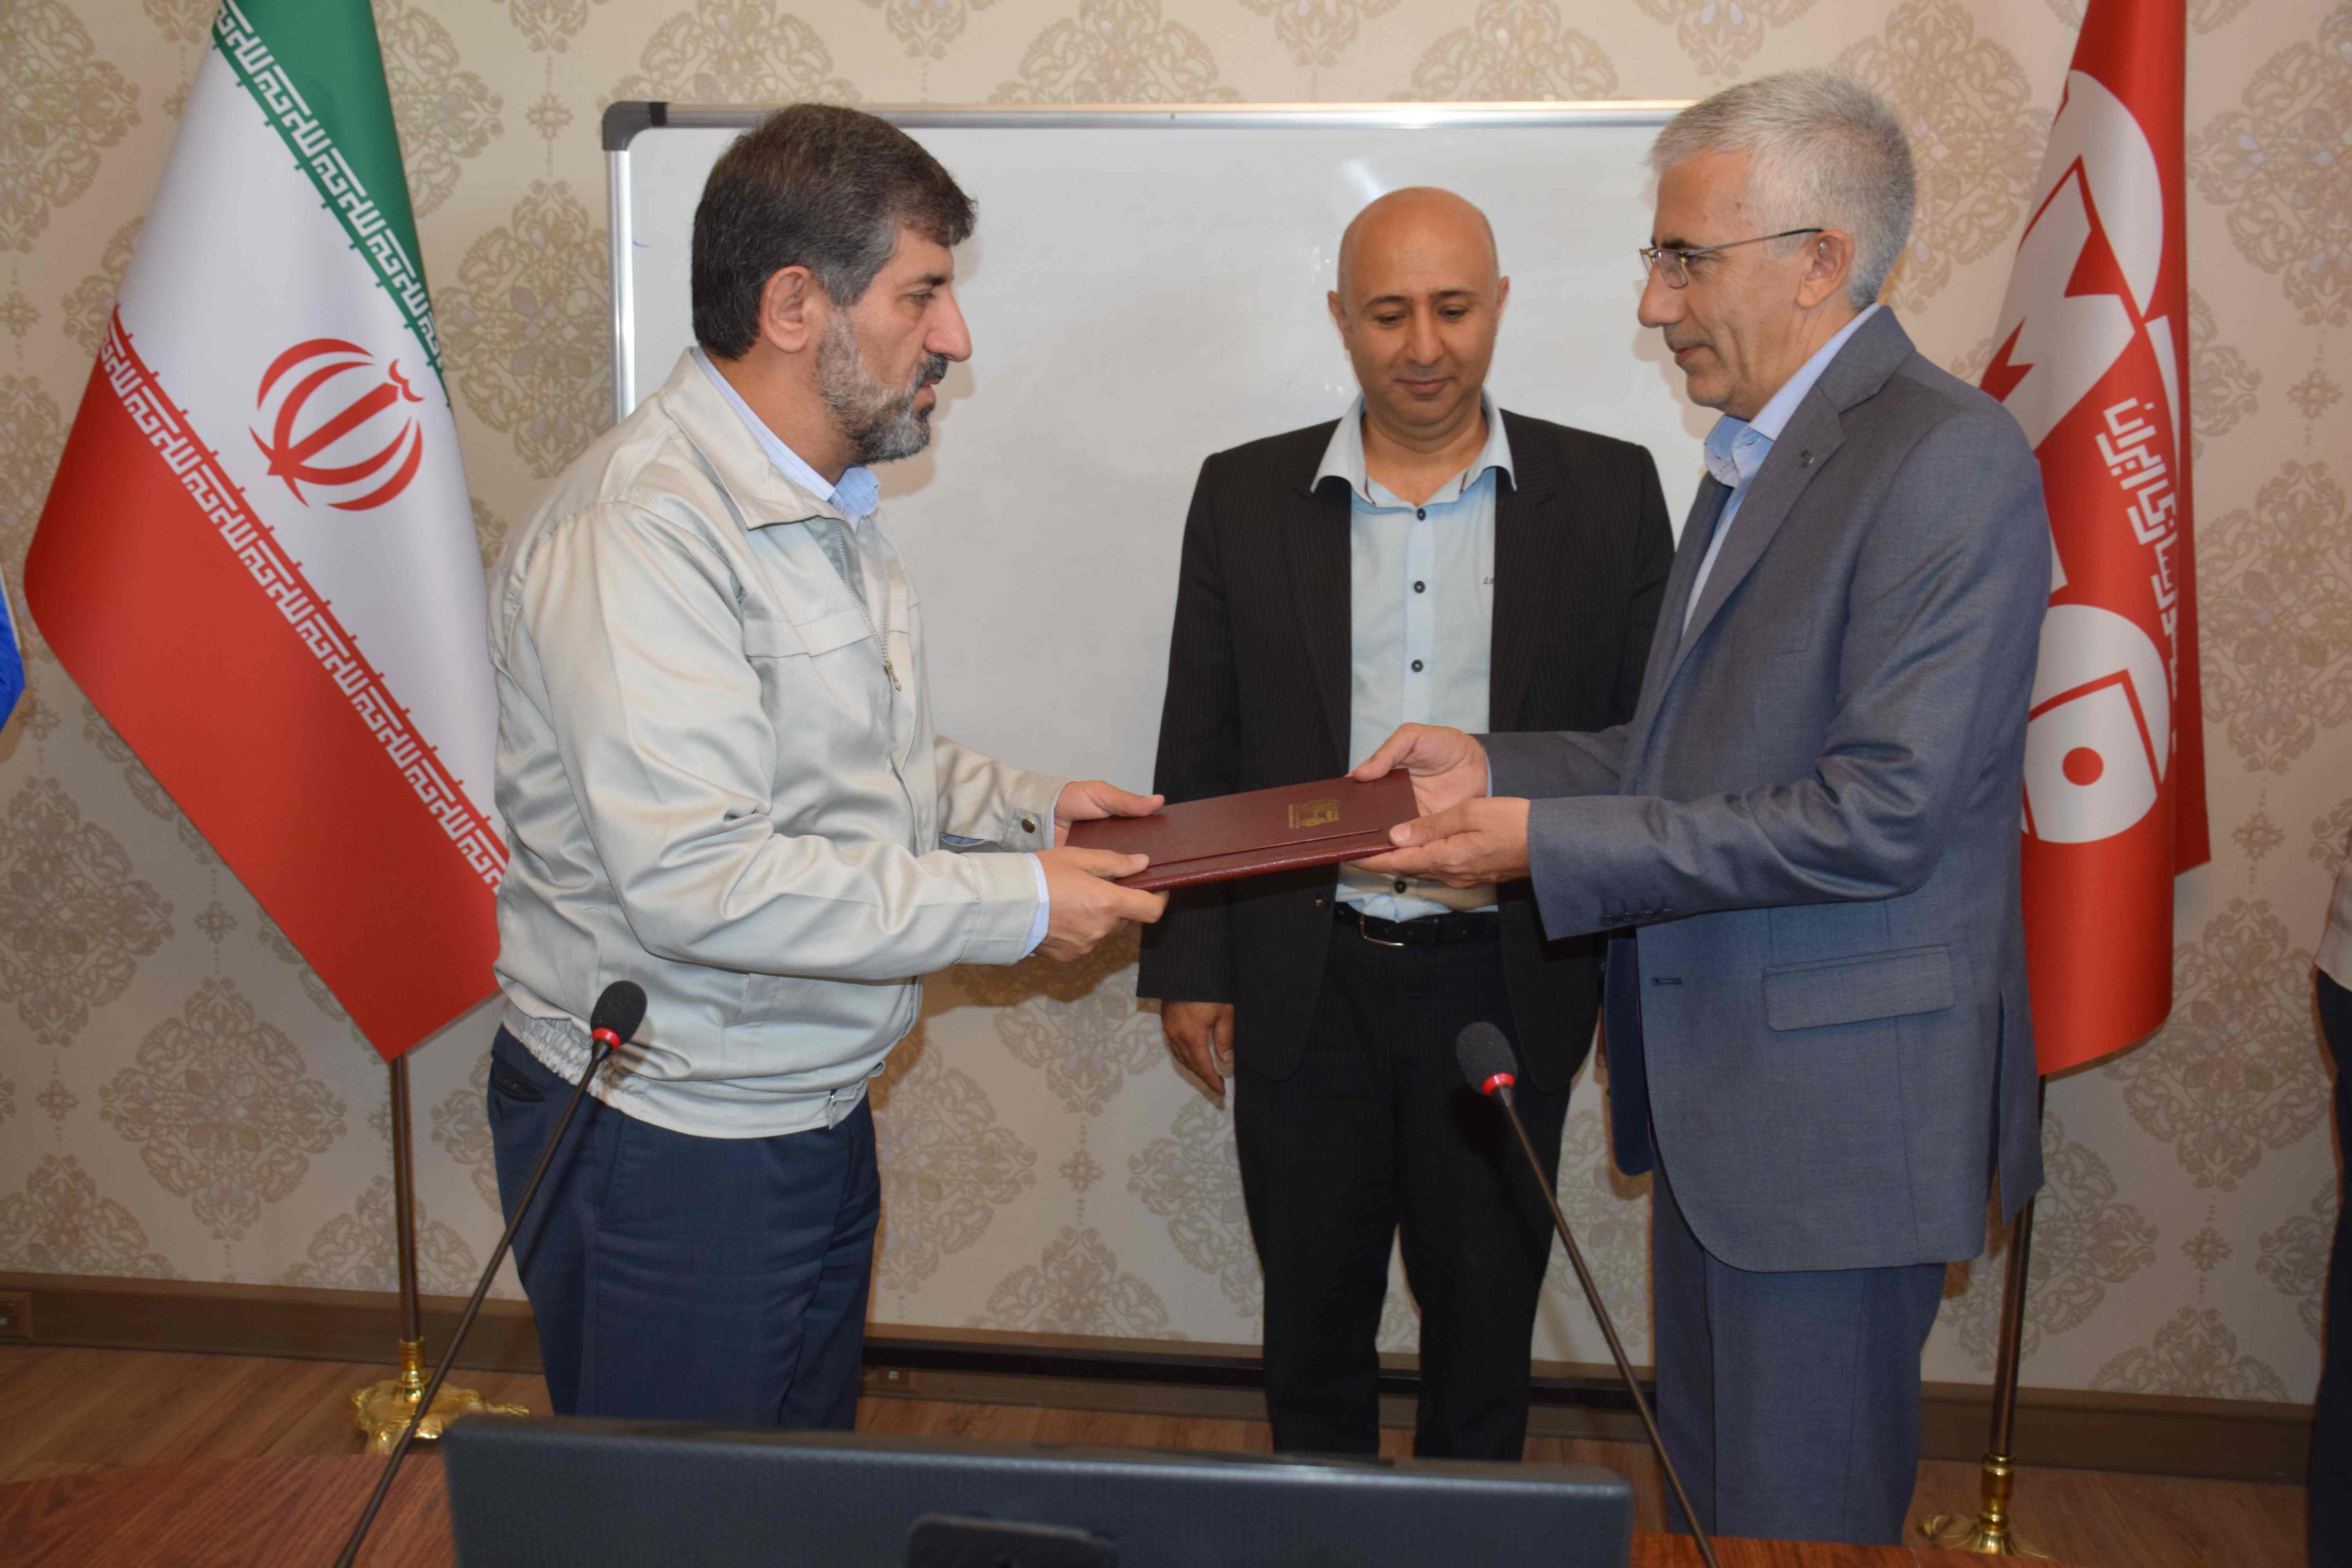  مهندس سعید پناهی به عنوان مدیر عامل شرکت خودروسازان دیزلی آذربایجان منصوب شد